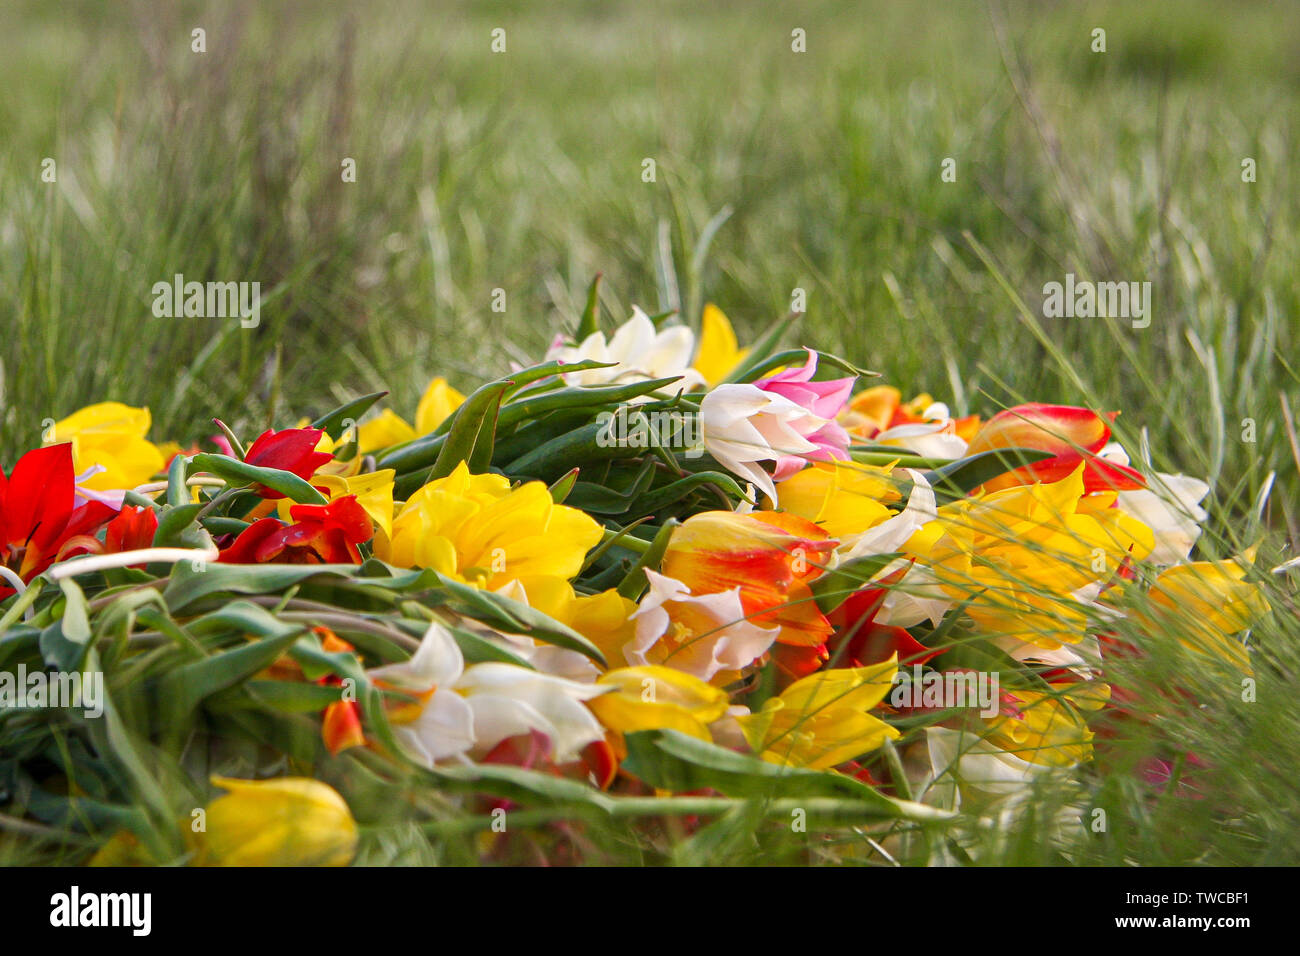 Une brassée de tulipes naines sauvages couché dans l'herbe. Belles fleurs fragiles de la République de Kalmoukie. Le joyau de la nature. Banque D'Images